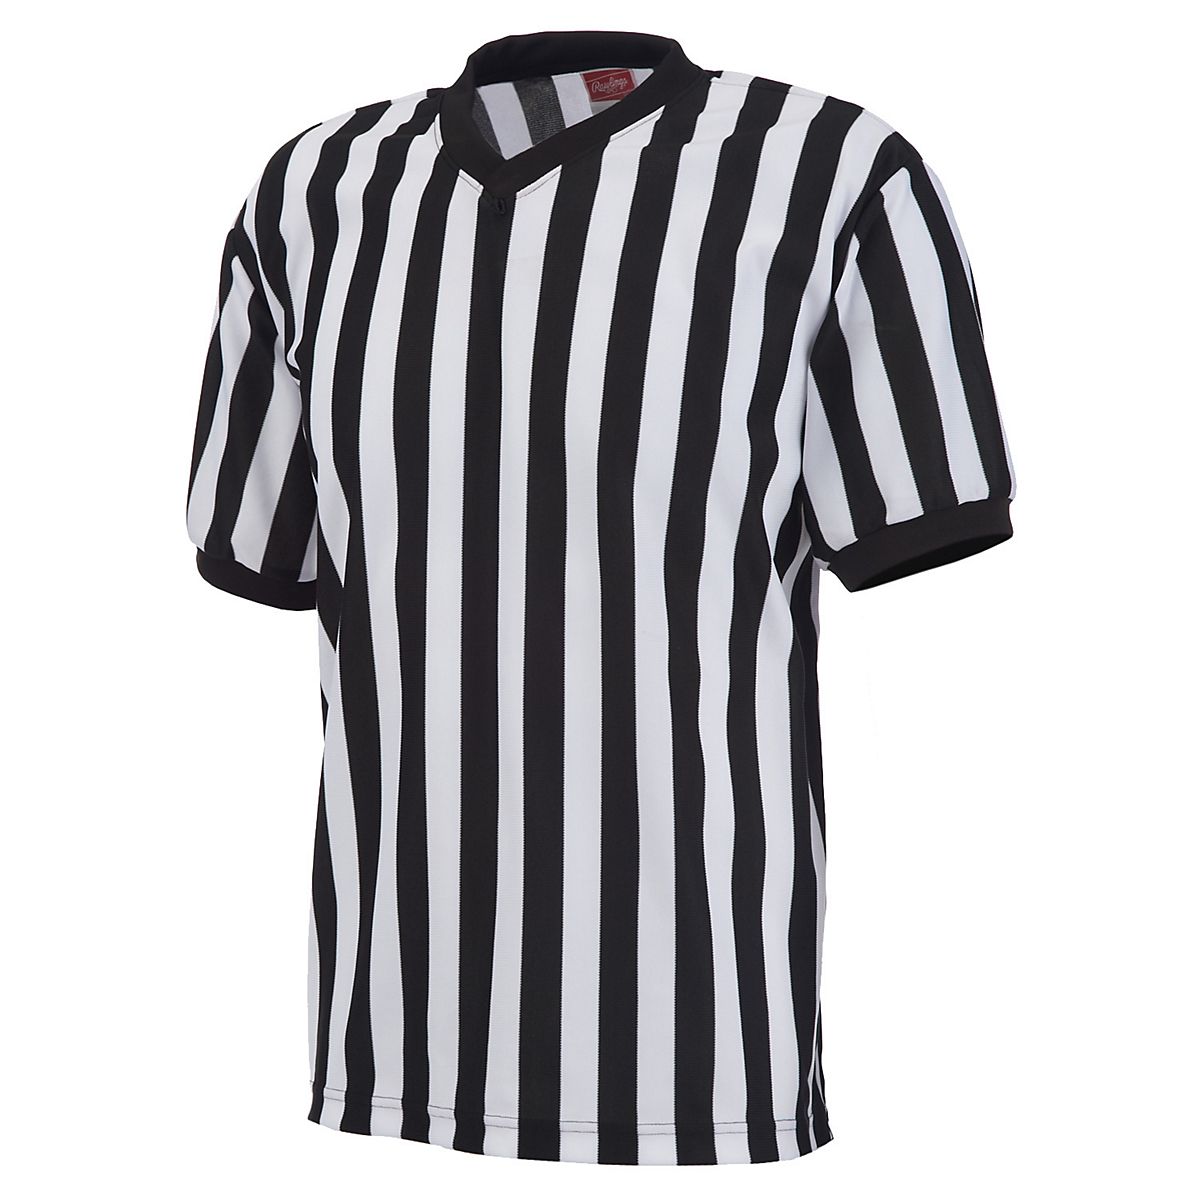 Rawlings Adults' Basketball Referee Jersey | Academy